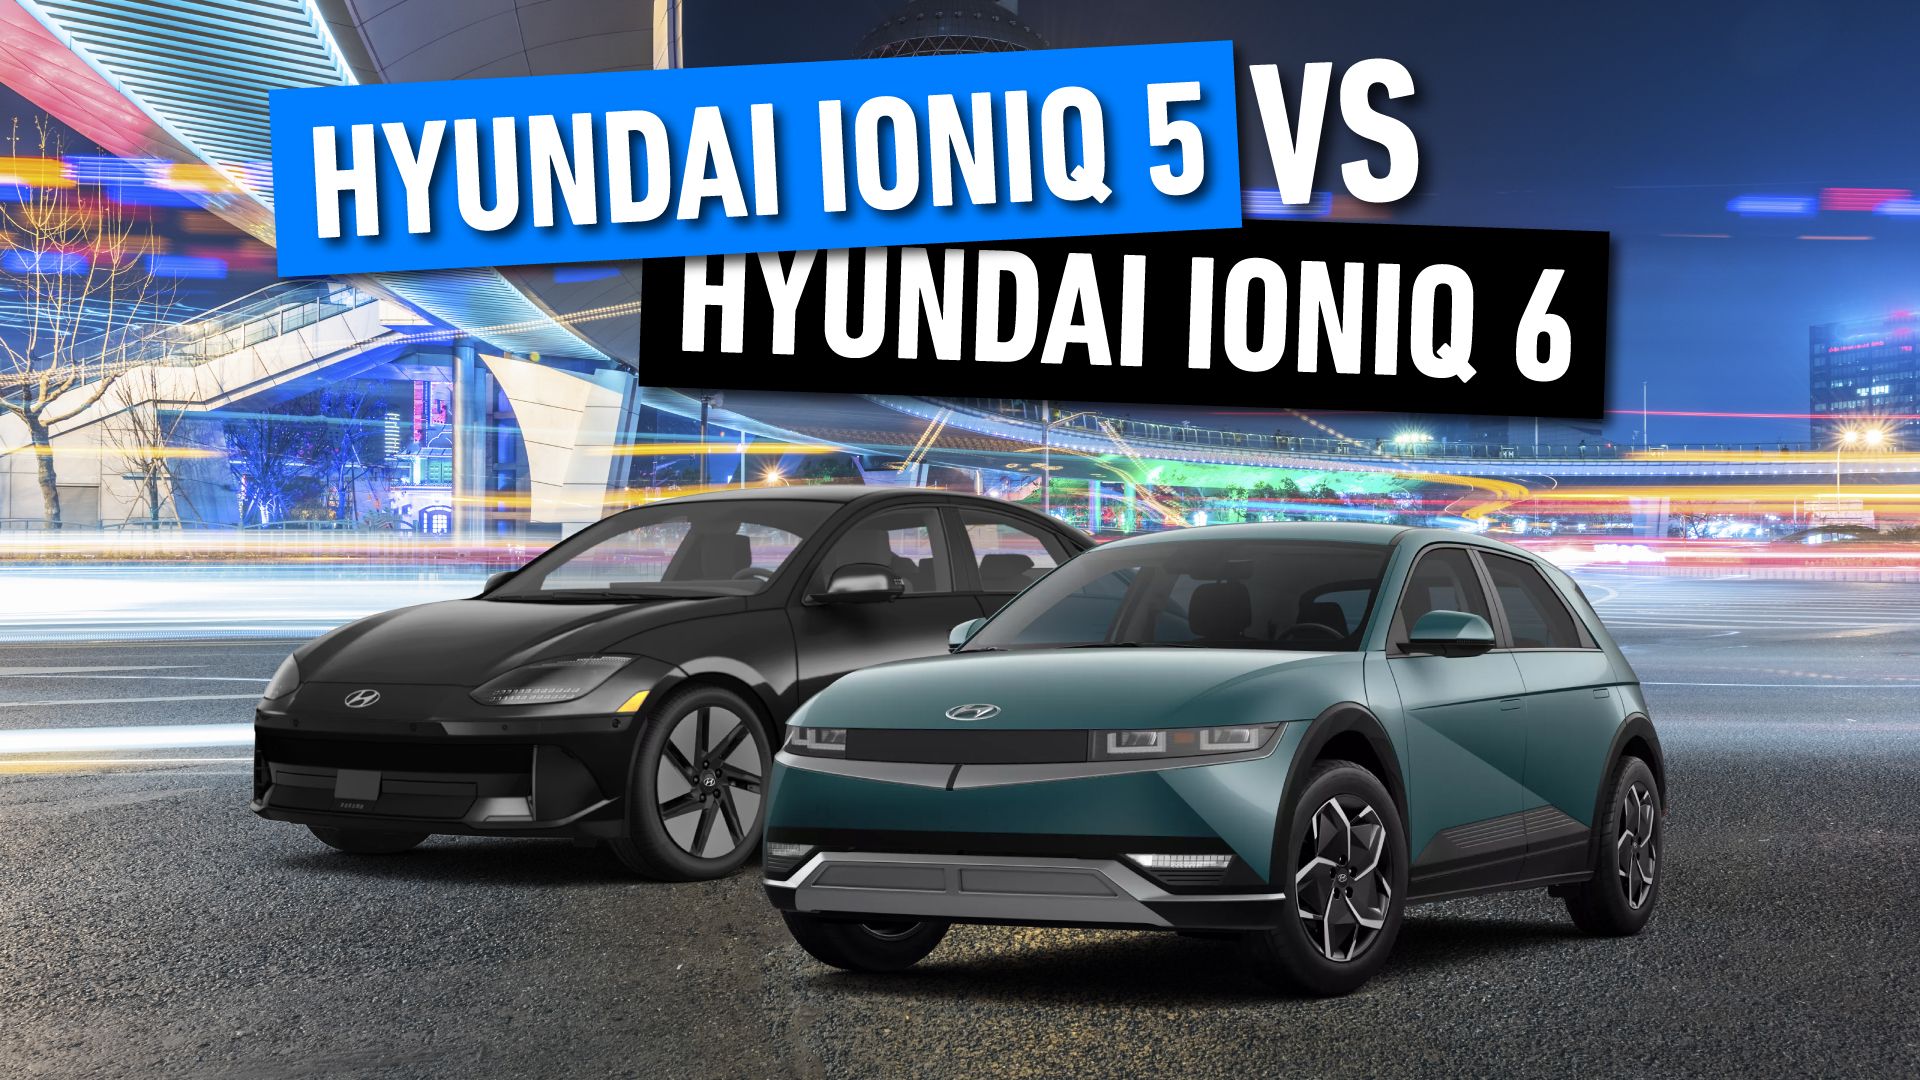 Hyundai Ioniq 5 and Hyundai Ioniq 6